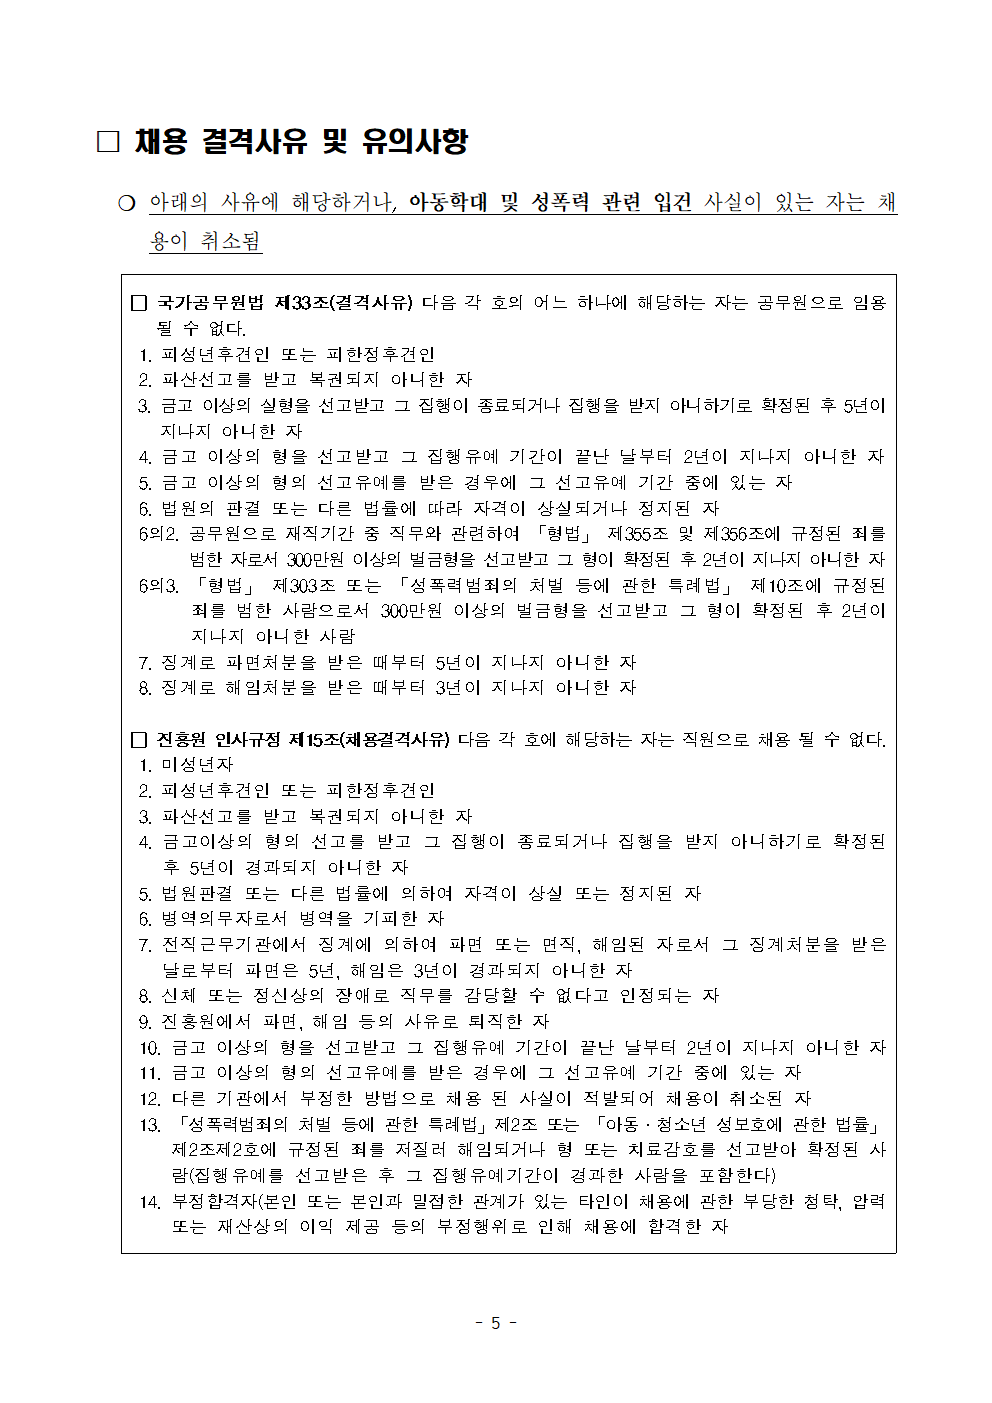 2020년 한국여성인권진흥원 7차 공개경쟁채용 공고  자세한 내용은 첨부파일 확인바랍니다